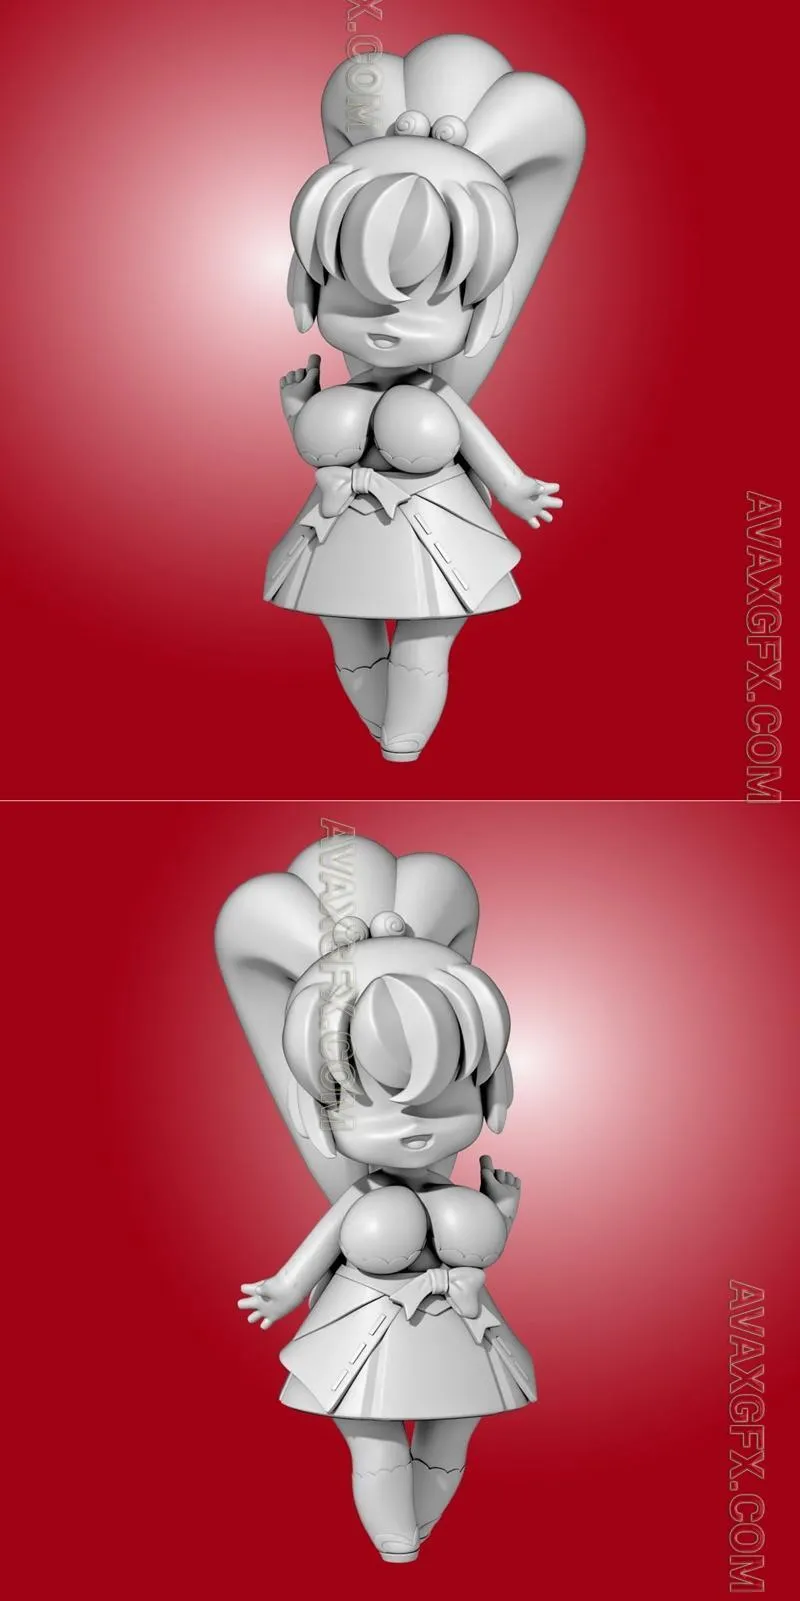 Mimyu Sculpt - STL 3D Model